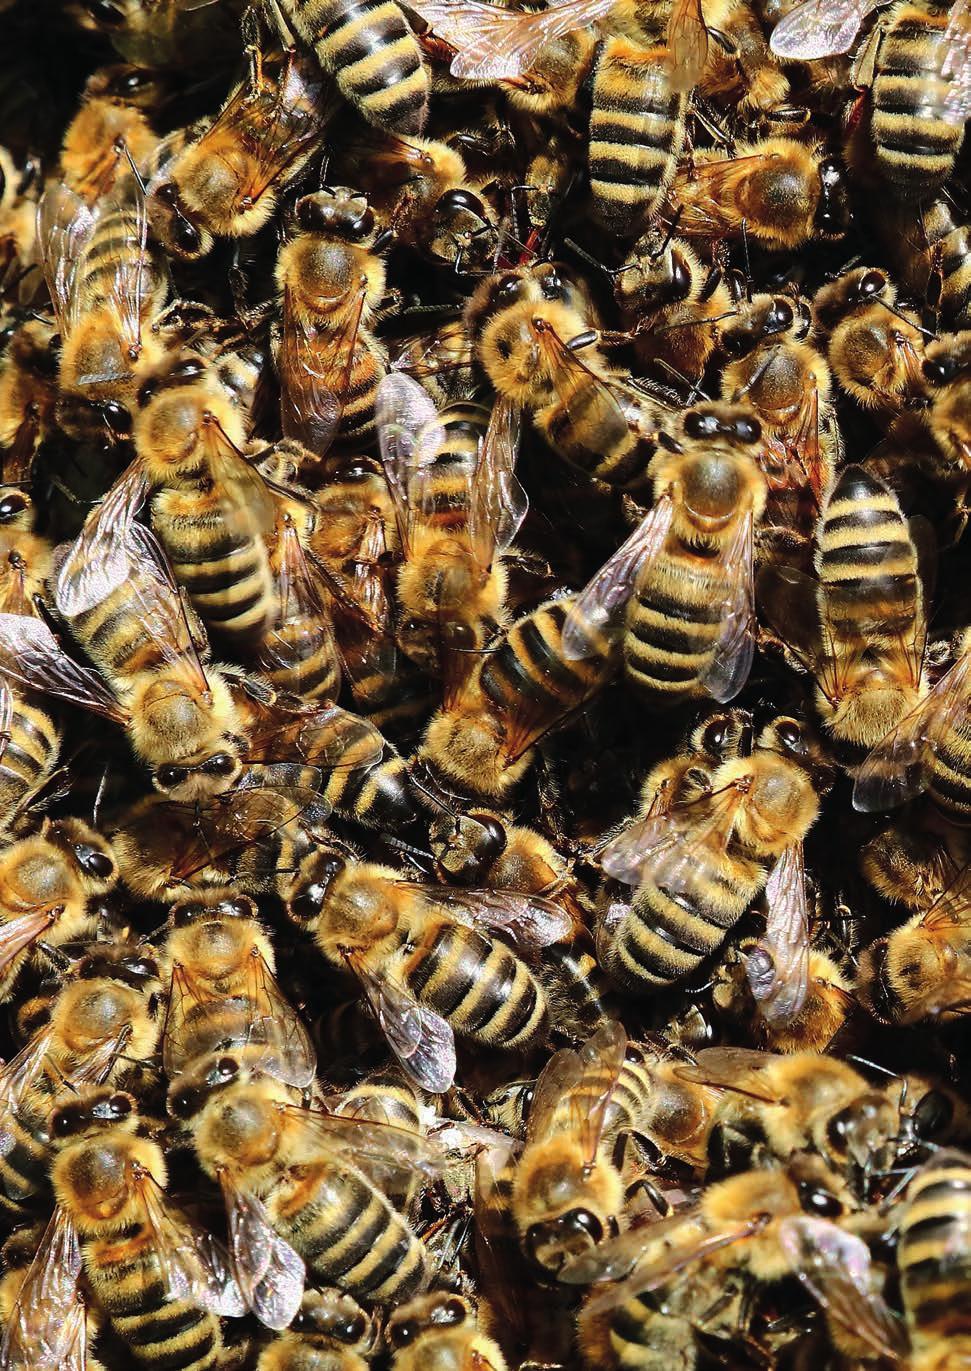 Zukunft Biene Grundlagenforschungsprojekt zur